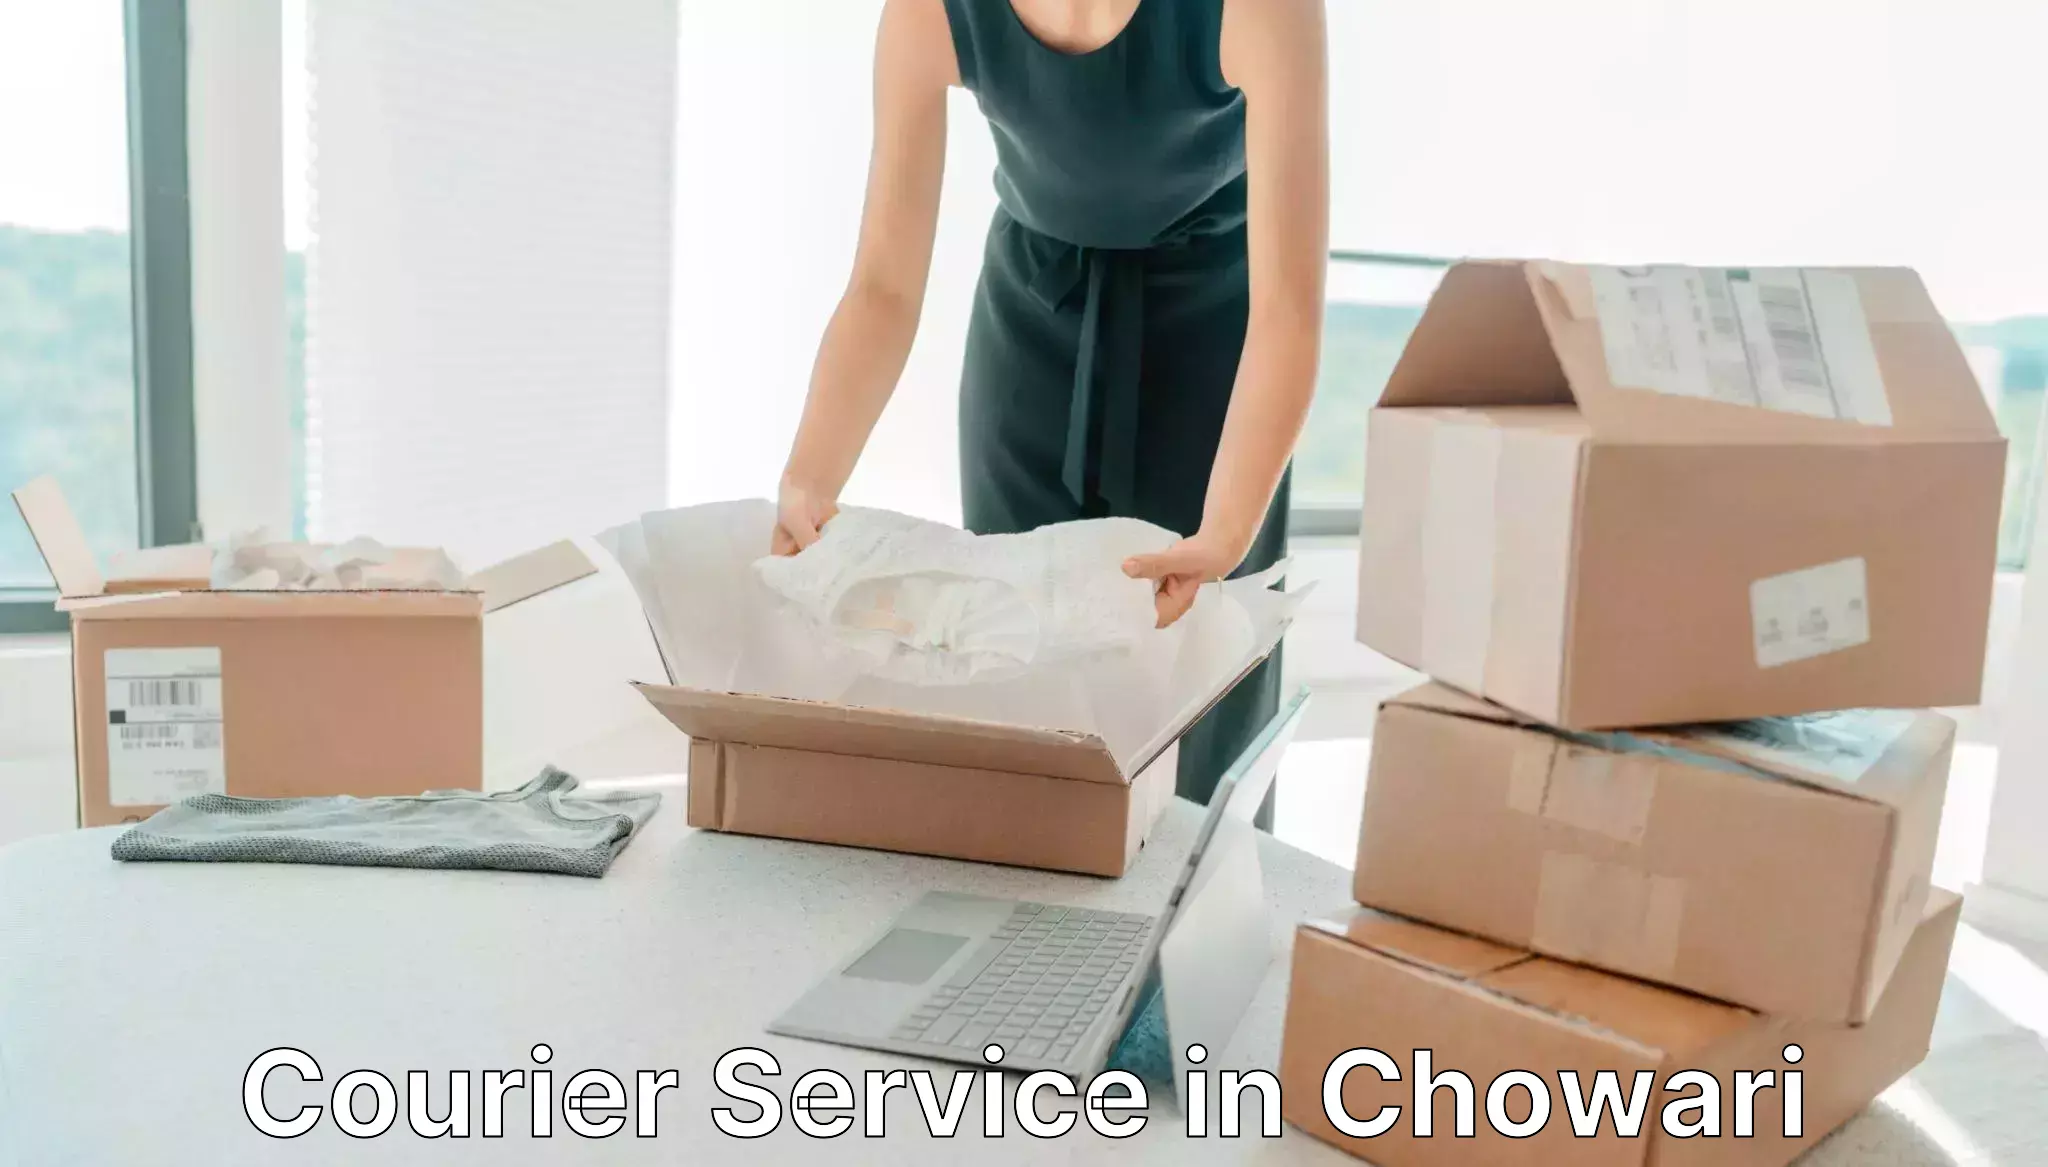 Modern delivery methods in Chowari